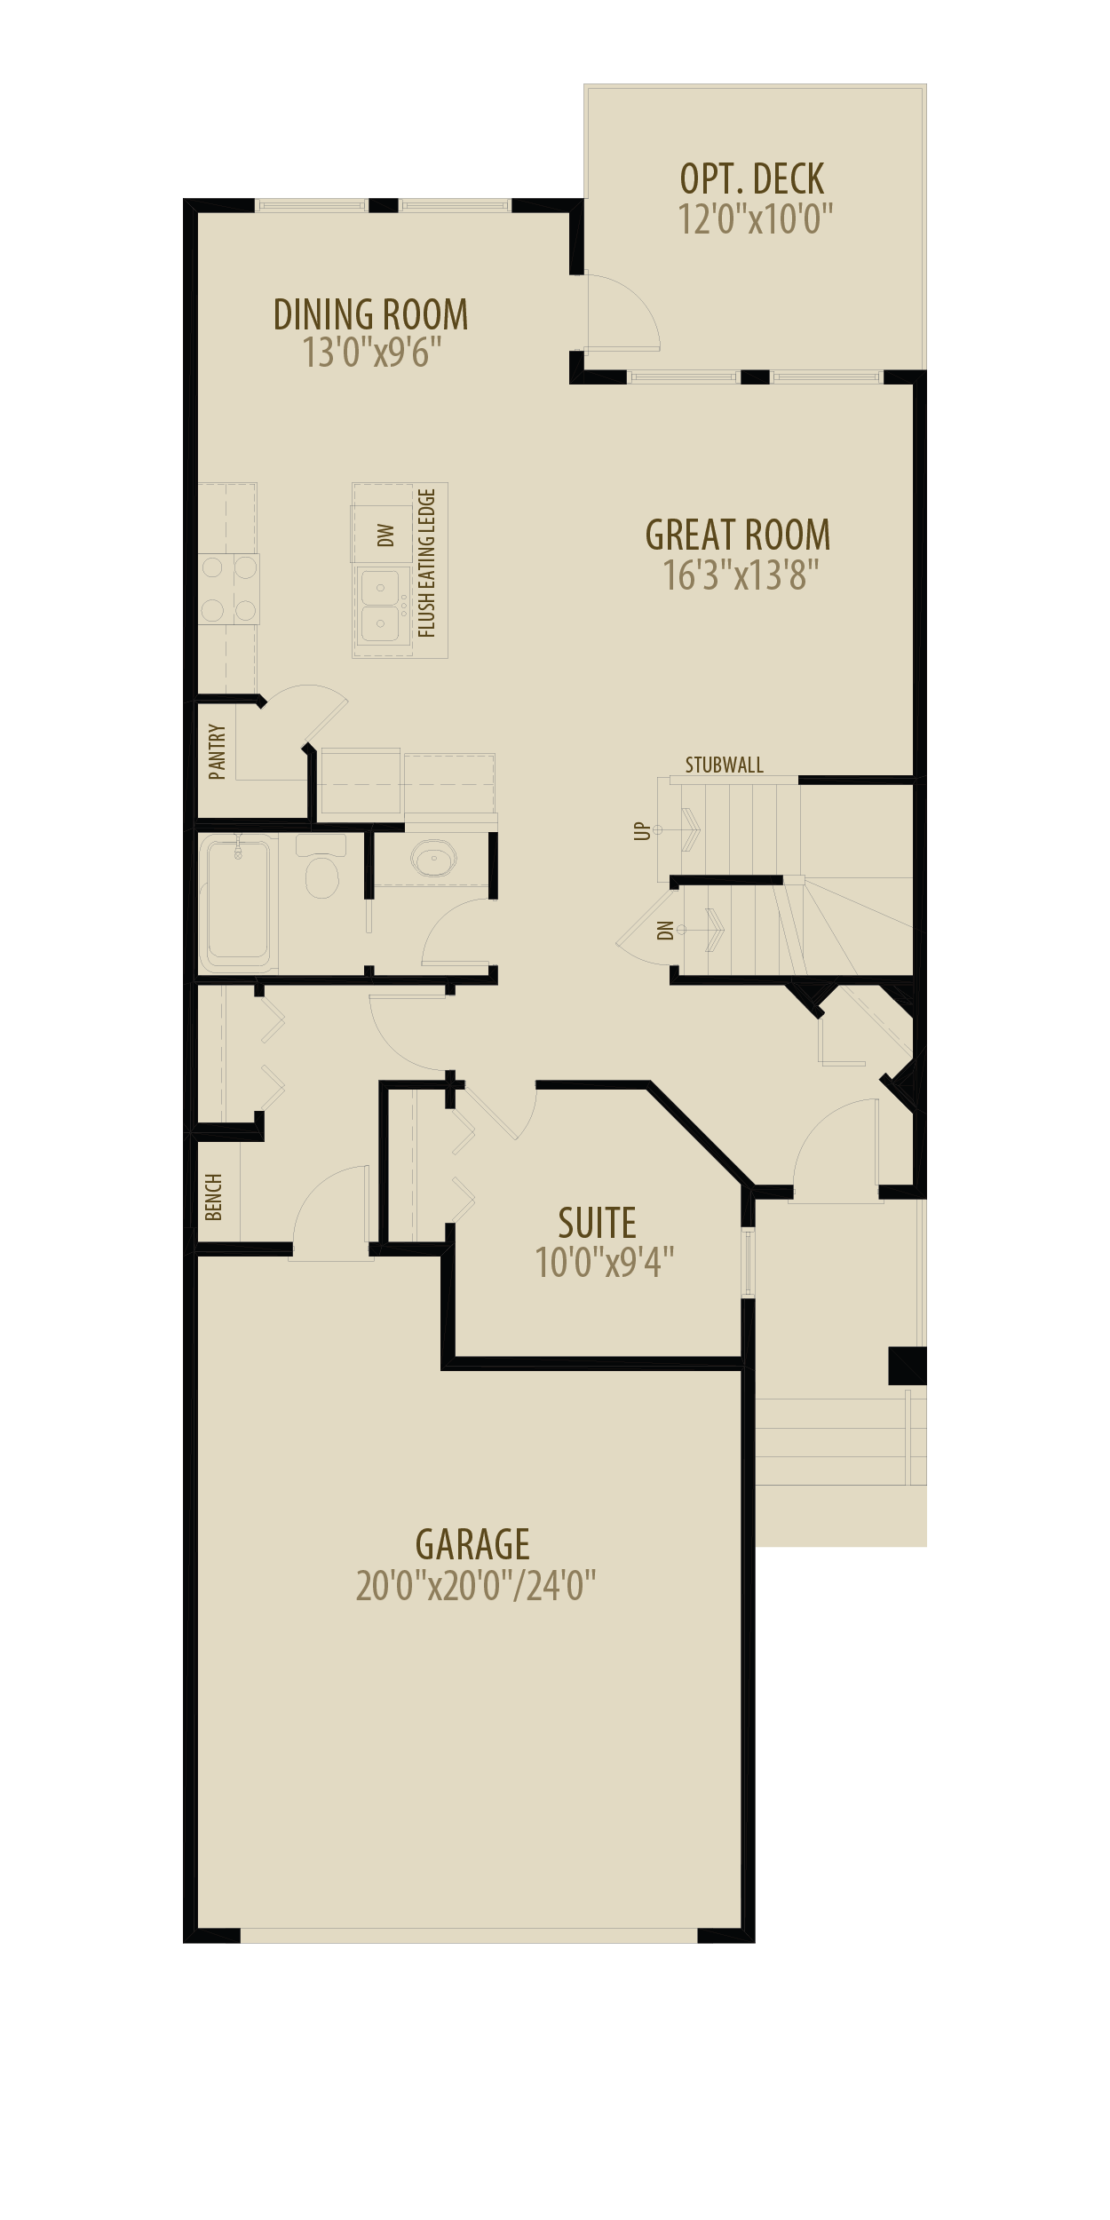 Main Floor Suite Adds 44 sq ft